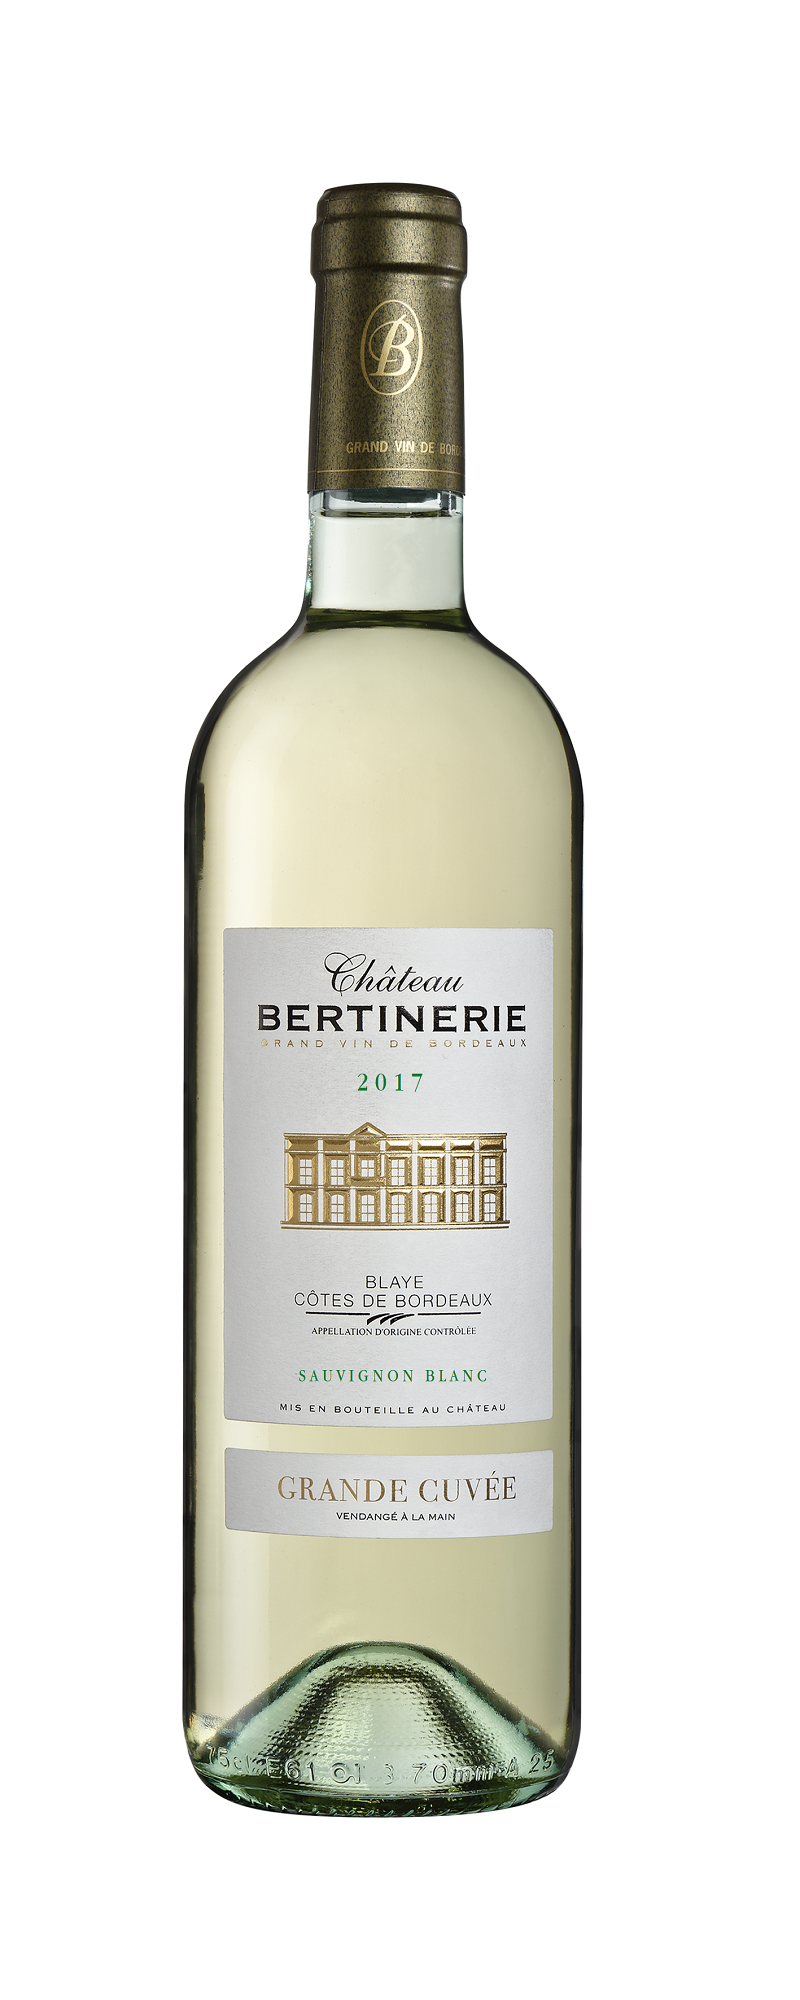 Chateau Bertinerie Grande Cuvée sauvignon white 75cl 2017 Blaye Cotes de Bordeaux